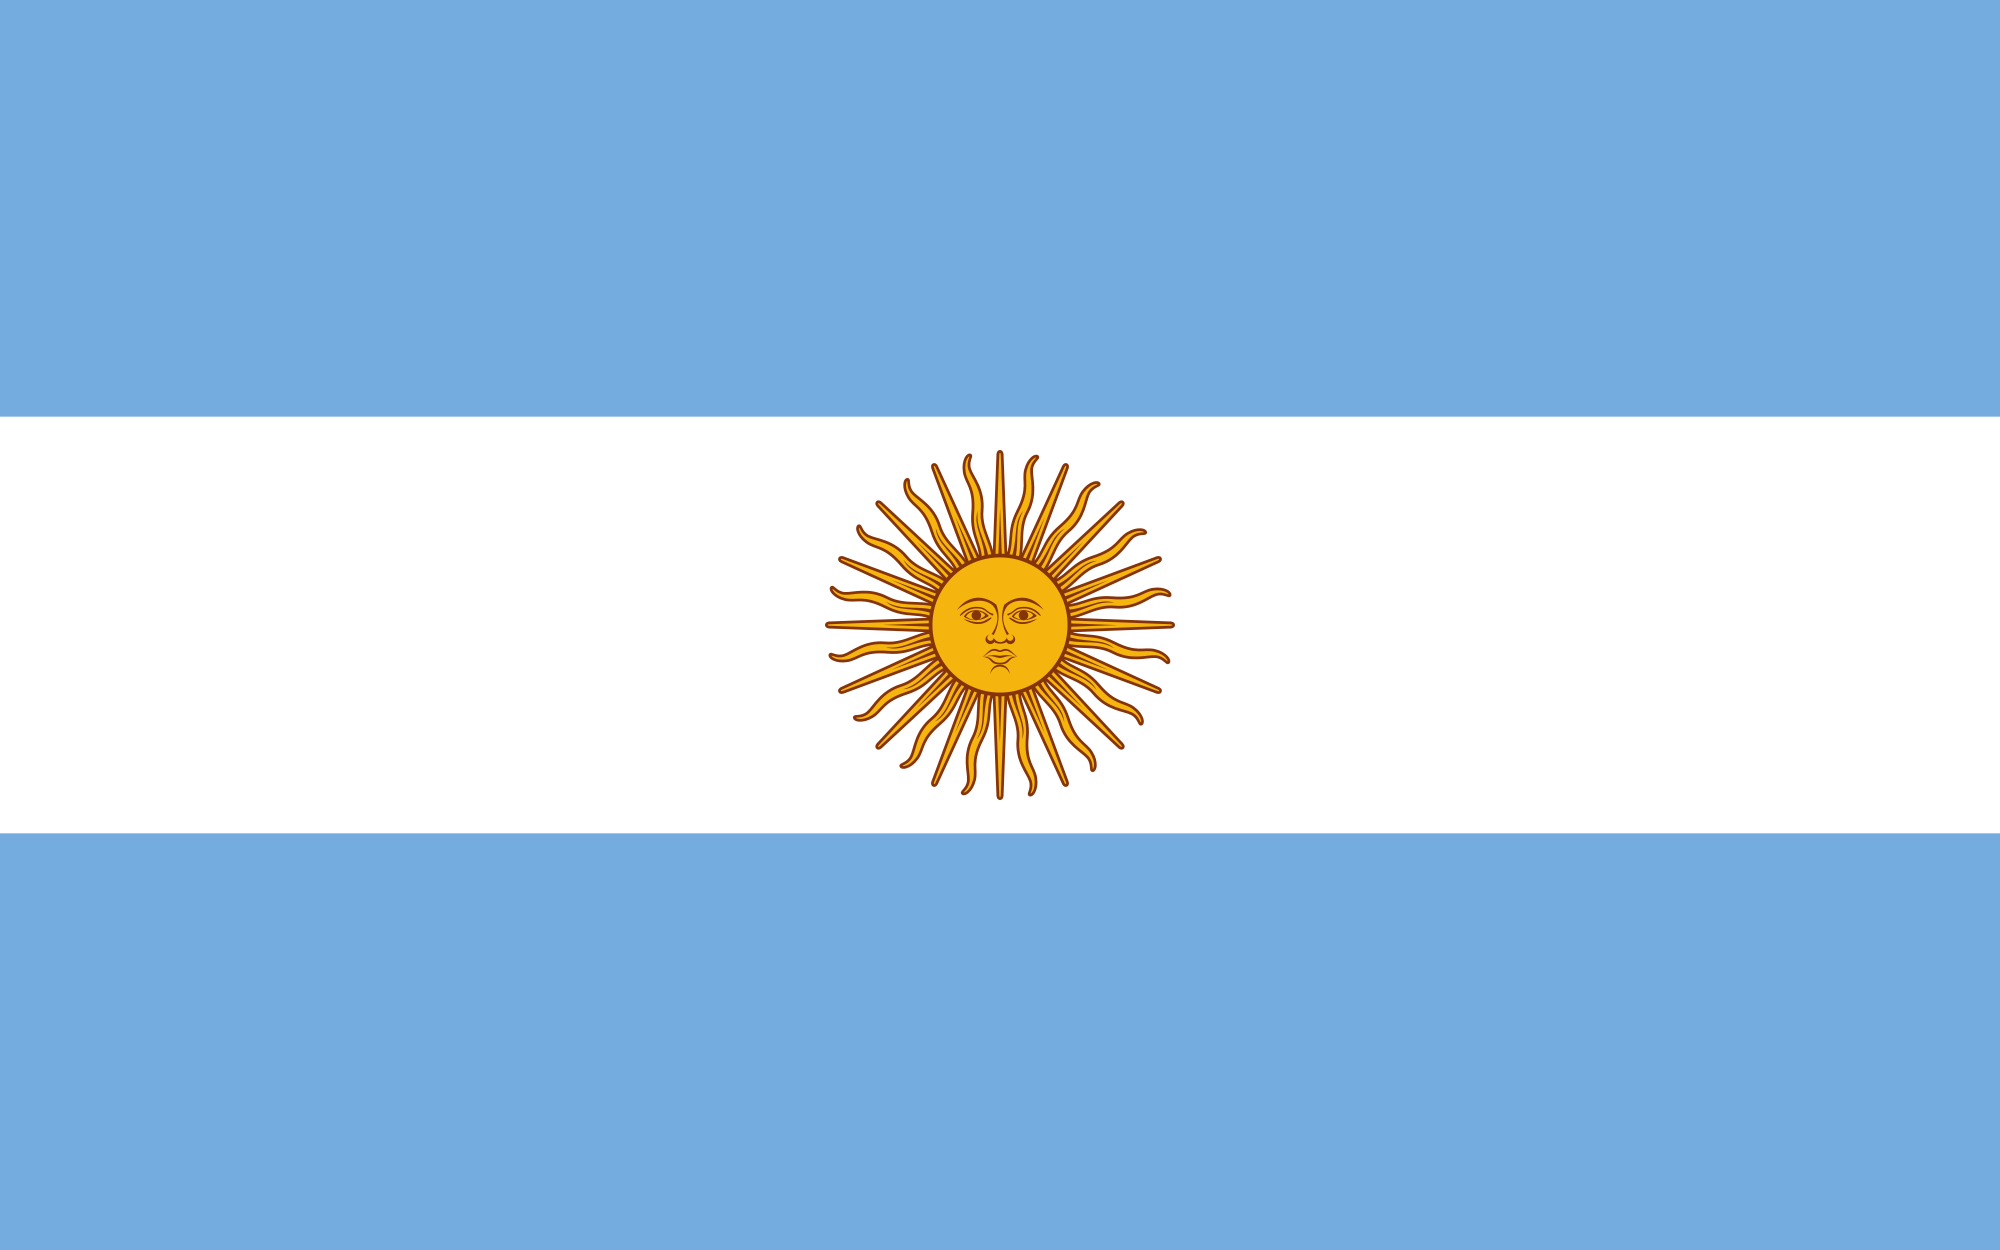 2000px-Flag_of_Argentina.svg